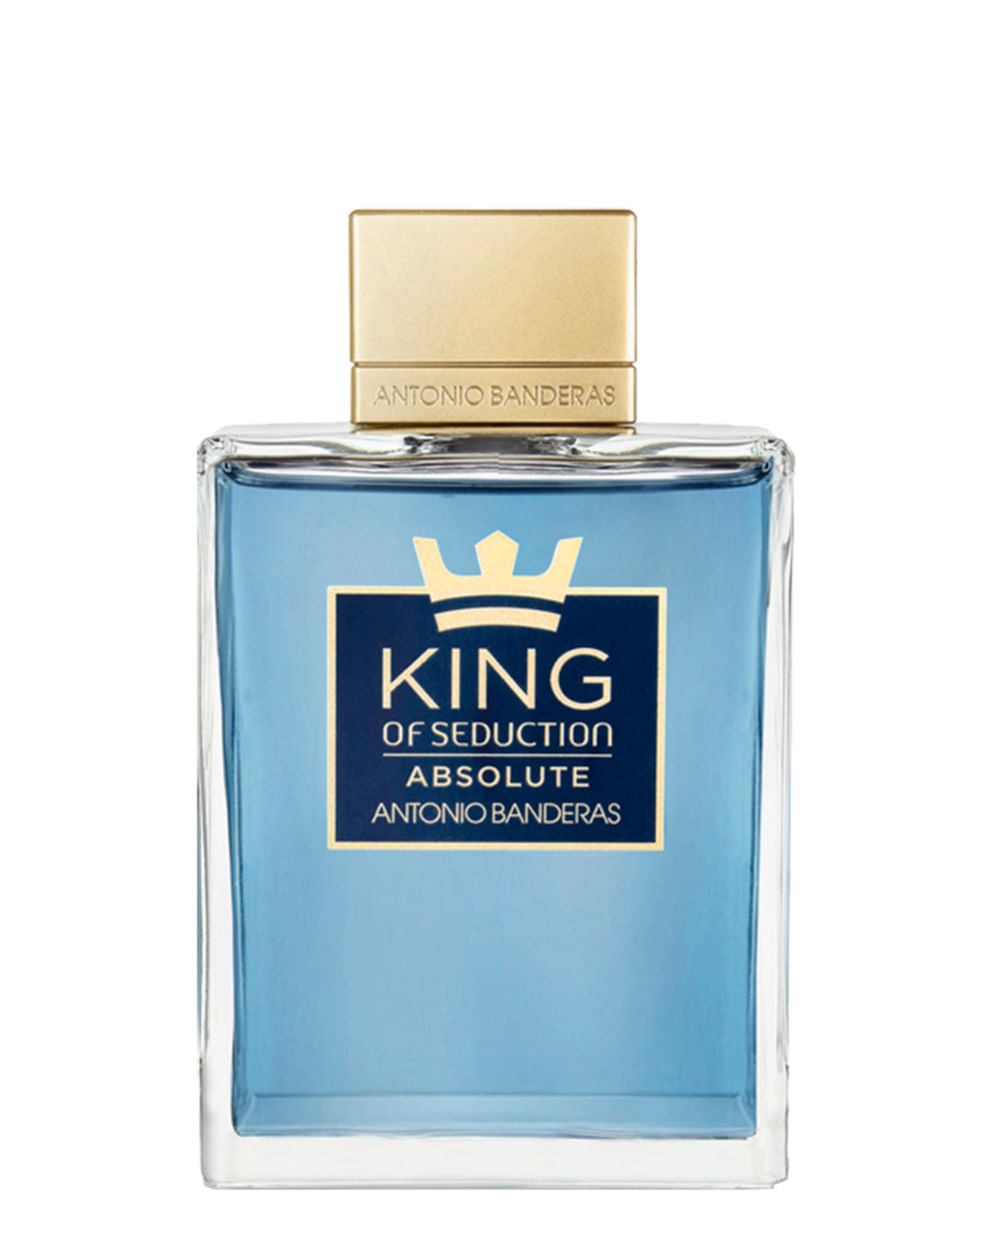 Avispón Gruñido Competitivo ANTONIO BANDERAS KING ABSOLUTE SEDUCTION 200ML - Eeblu Perfumes